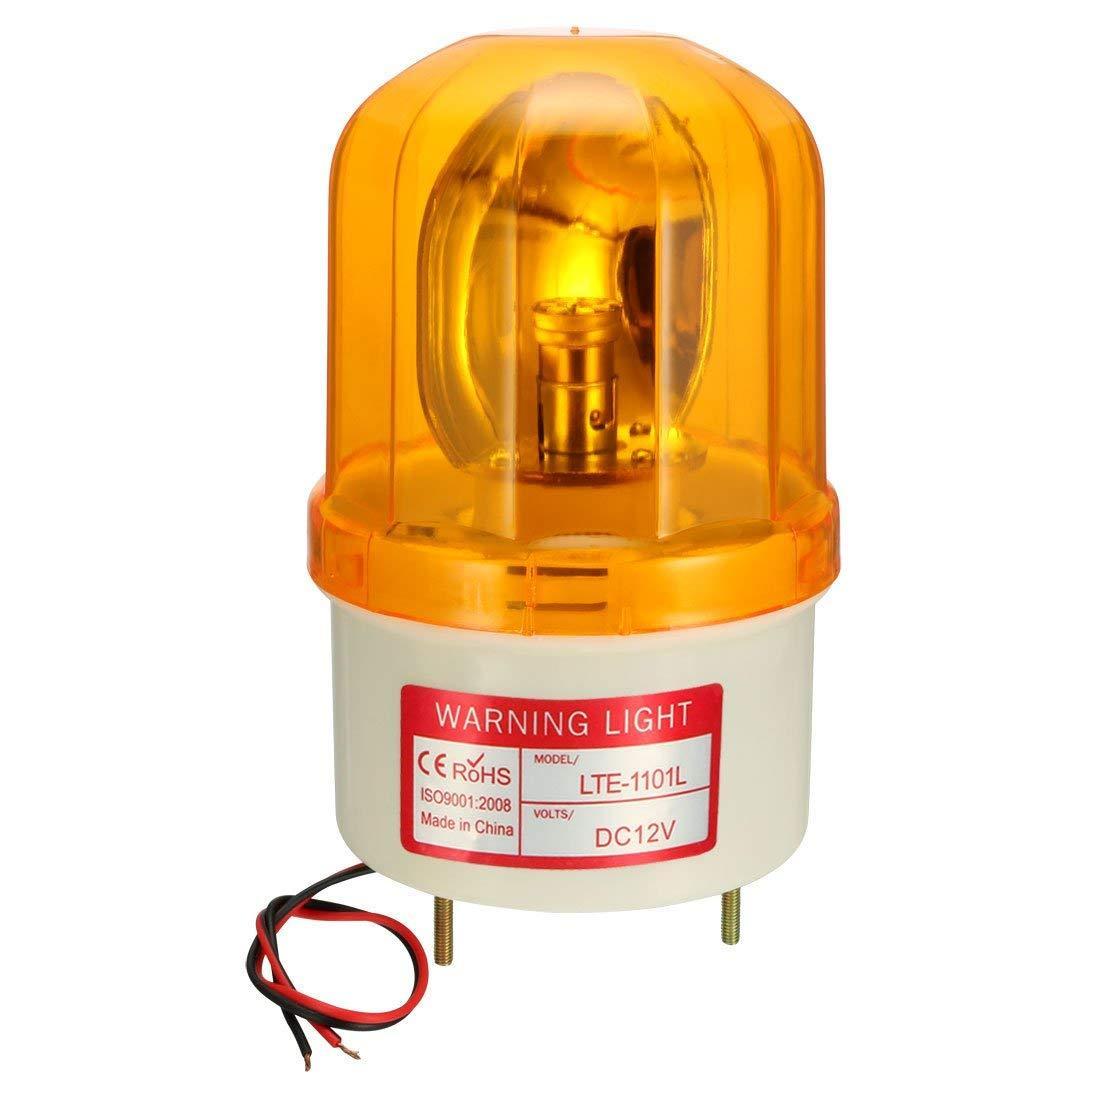 แบบมีเสียง+ไฟหมุน (Rotate+Sound) LED หลอดไฟเตือนหมุนกระพริบอุตสาหกรรมหอสัญญาณโคมไฟ DC12V LTE1101LJ